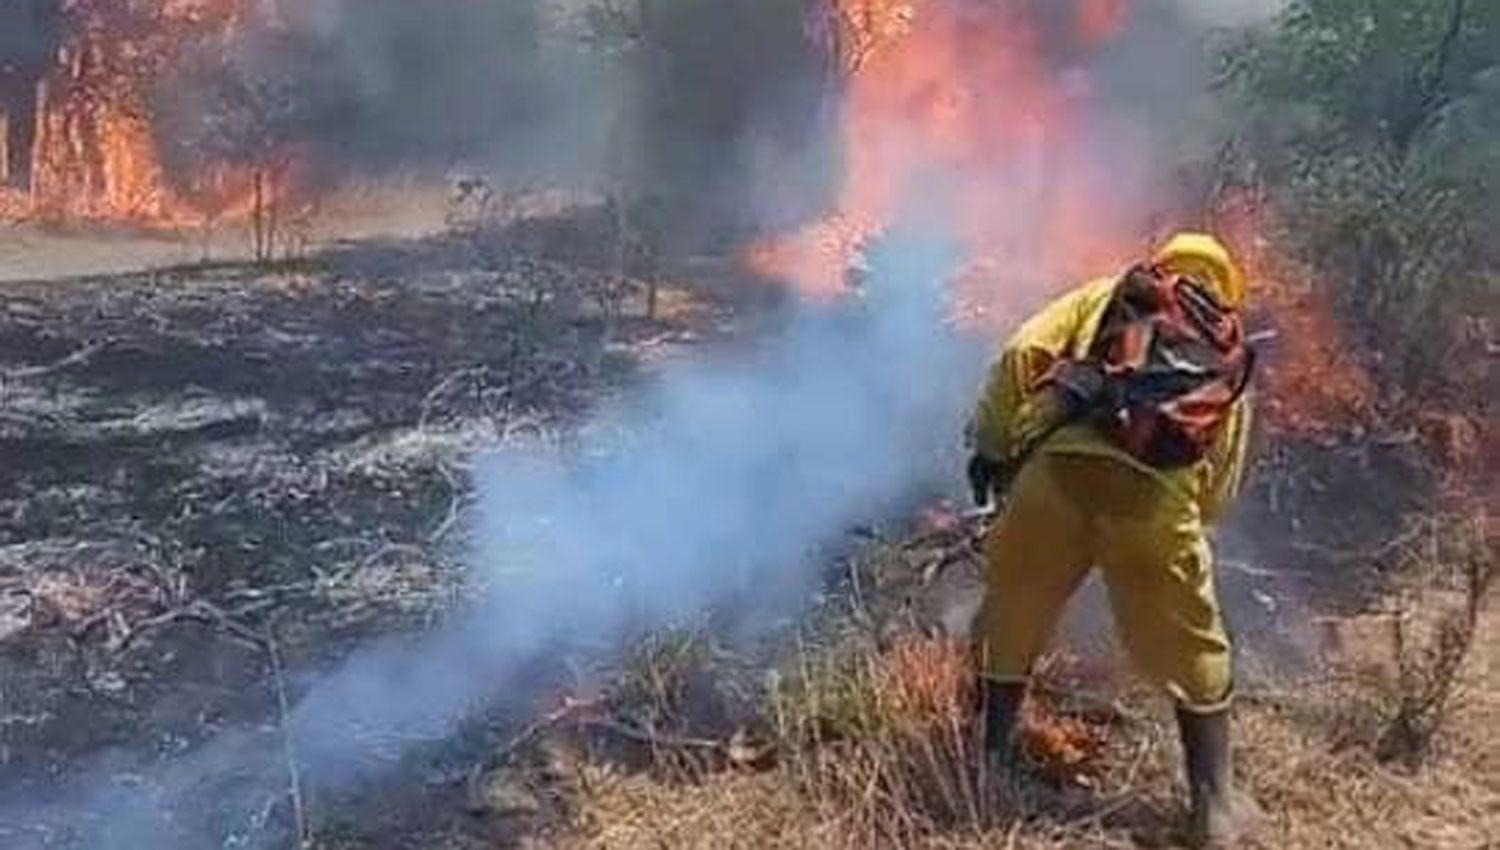 Incendios forestales pusieron en jaque al territorio santiaguentildeo